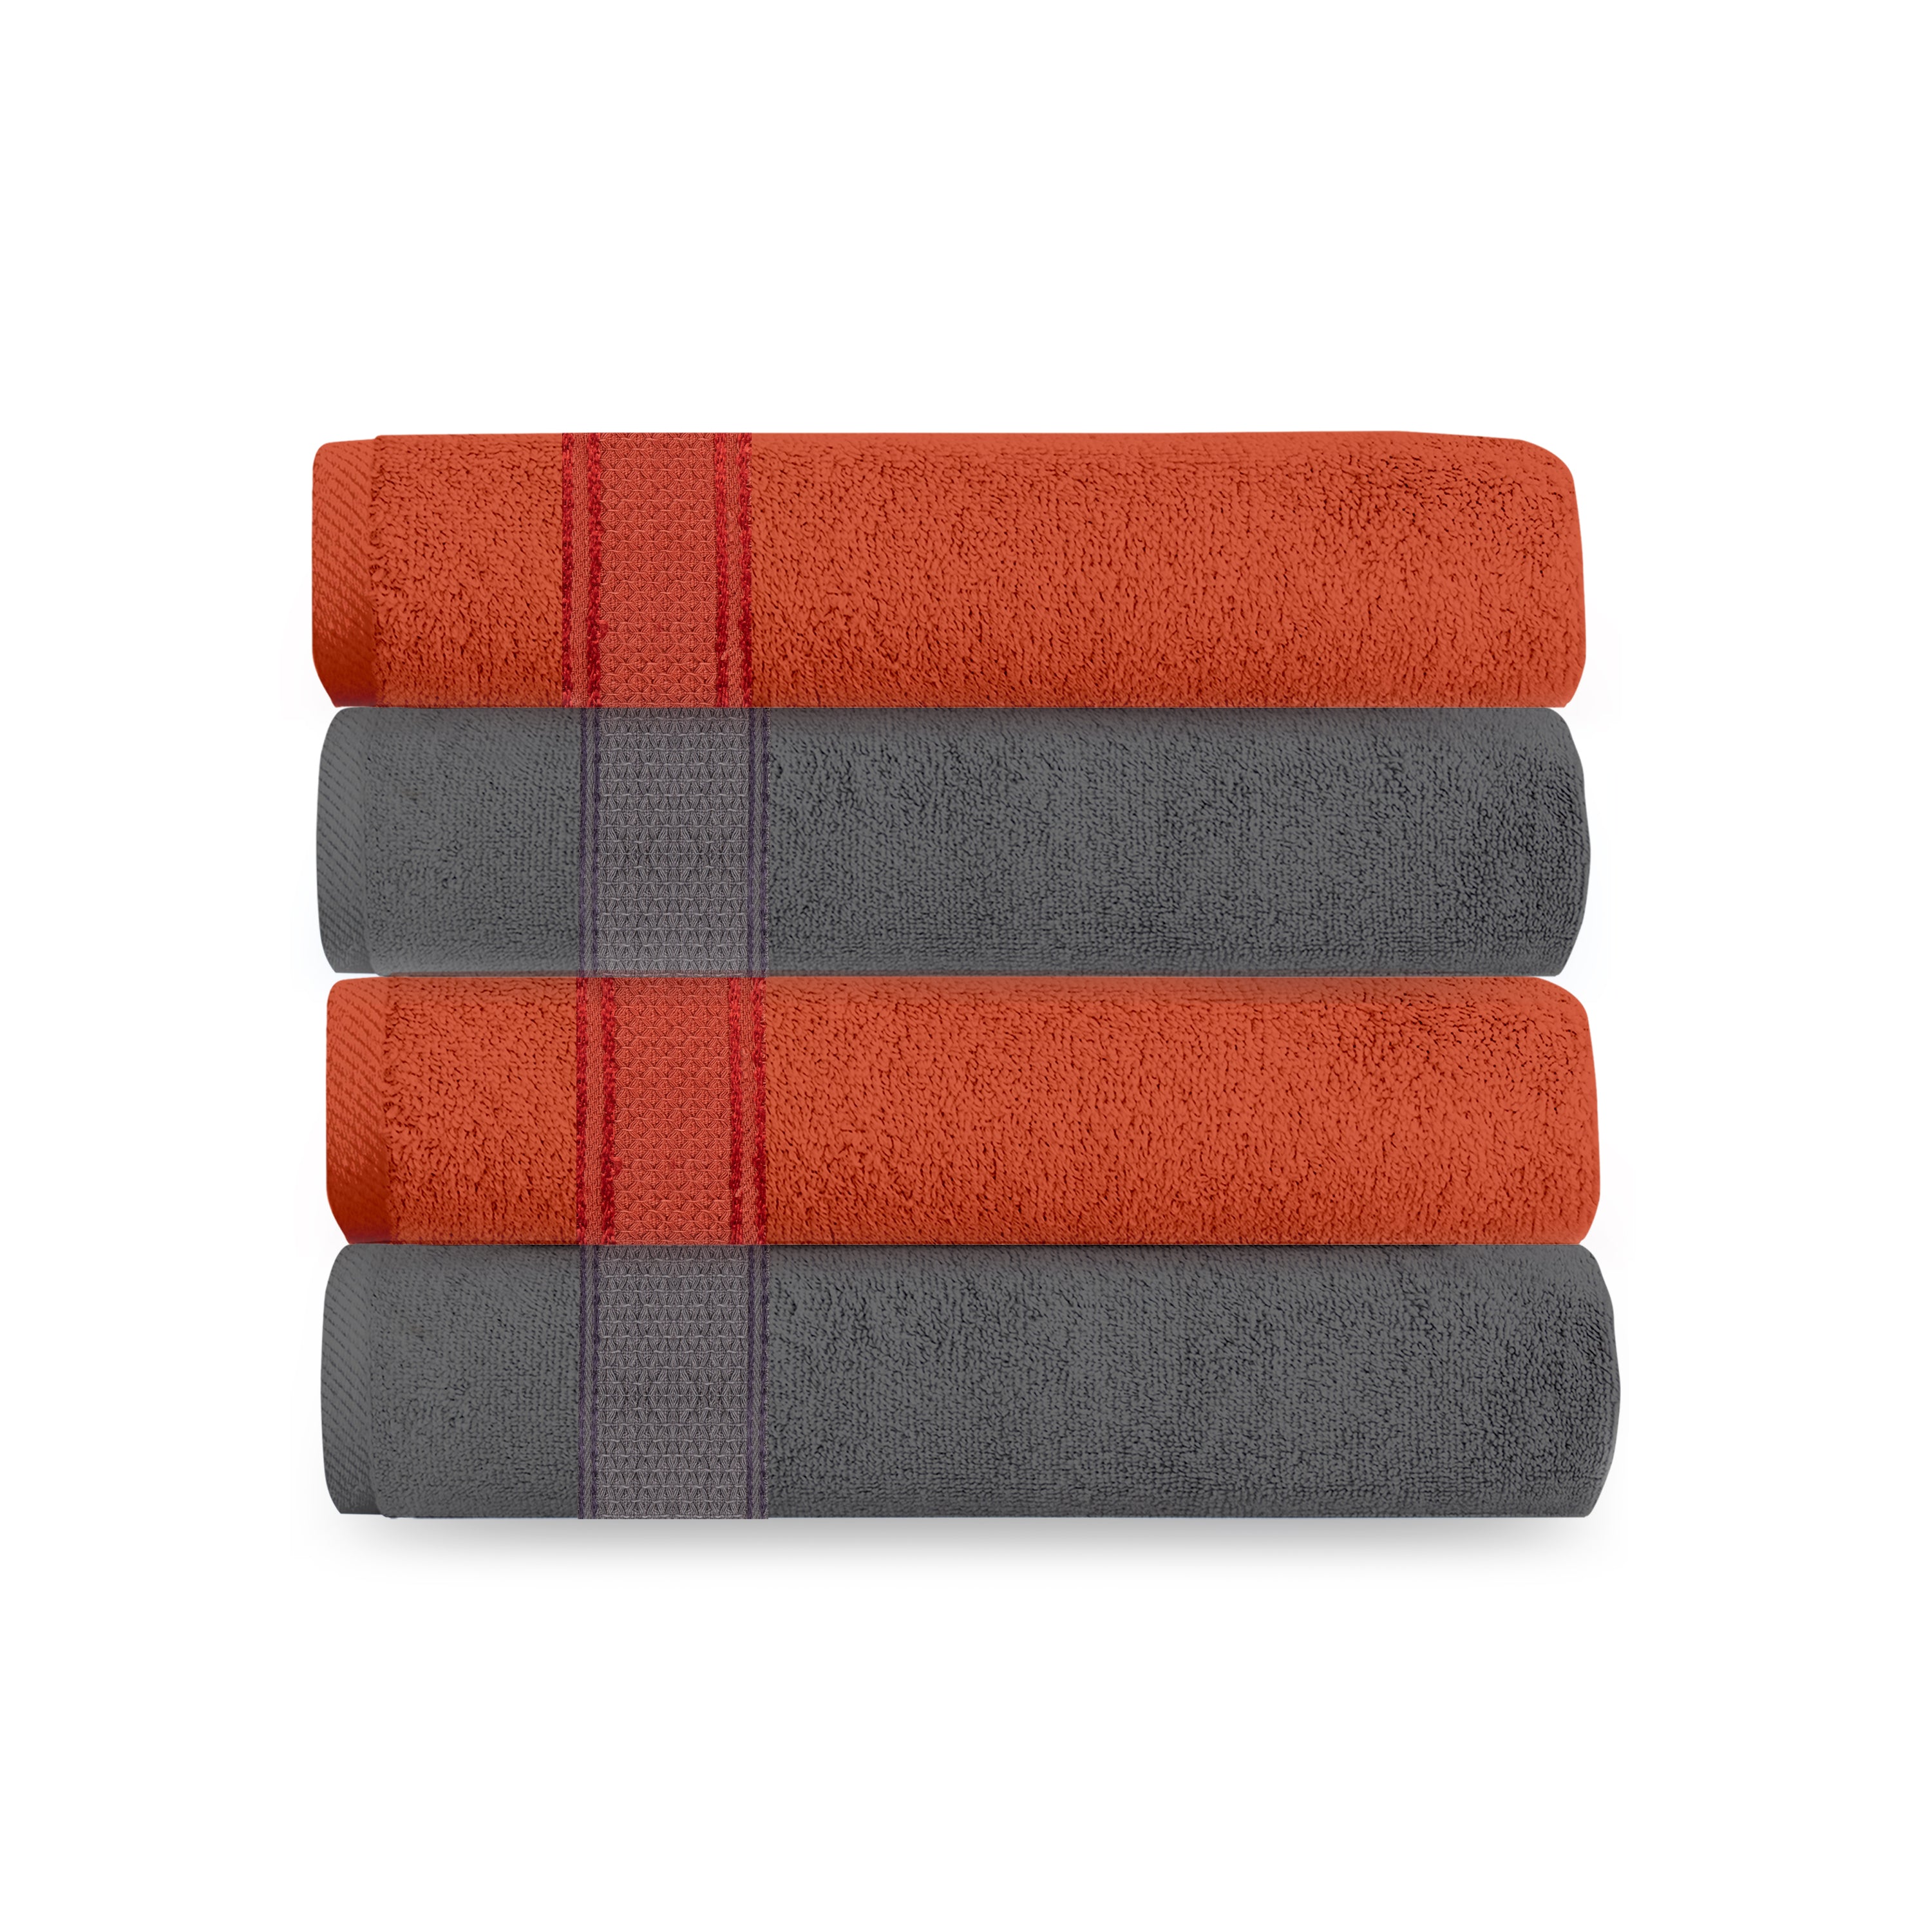 Aquacado 38 x 58 cm Hand Towel Set Of 4 Charcoal Grey & Rust